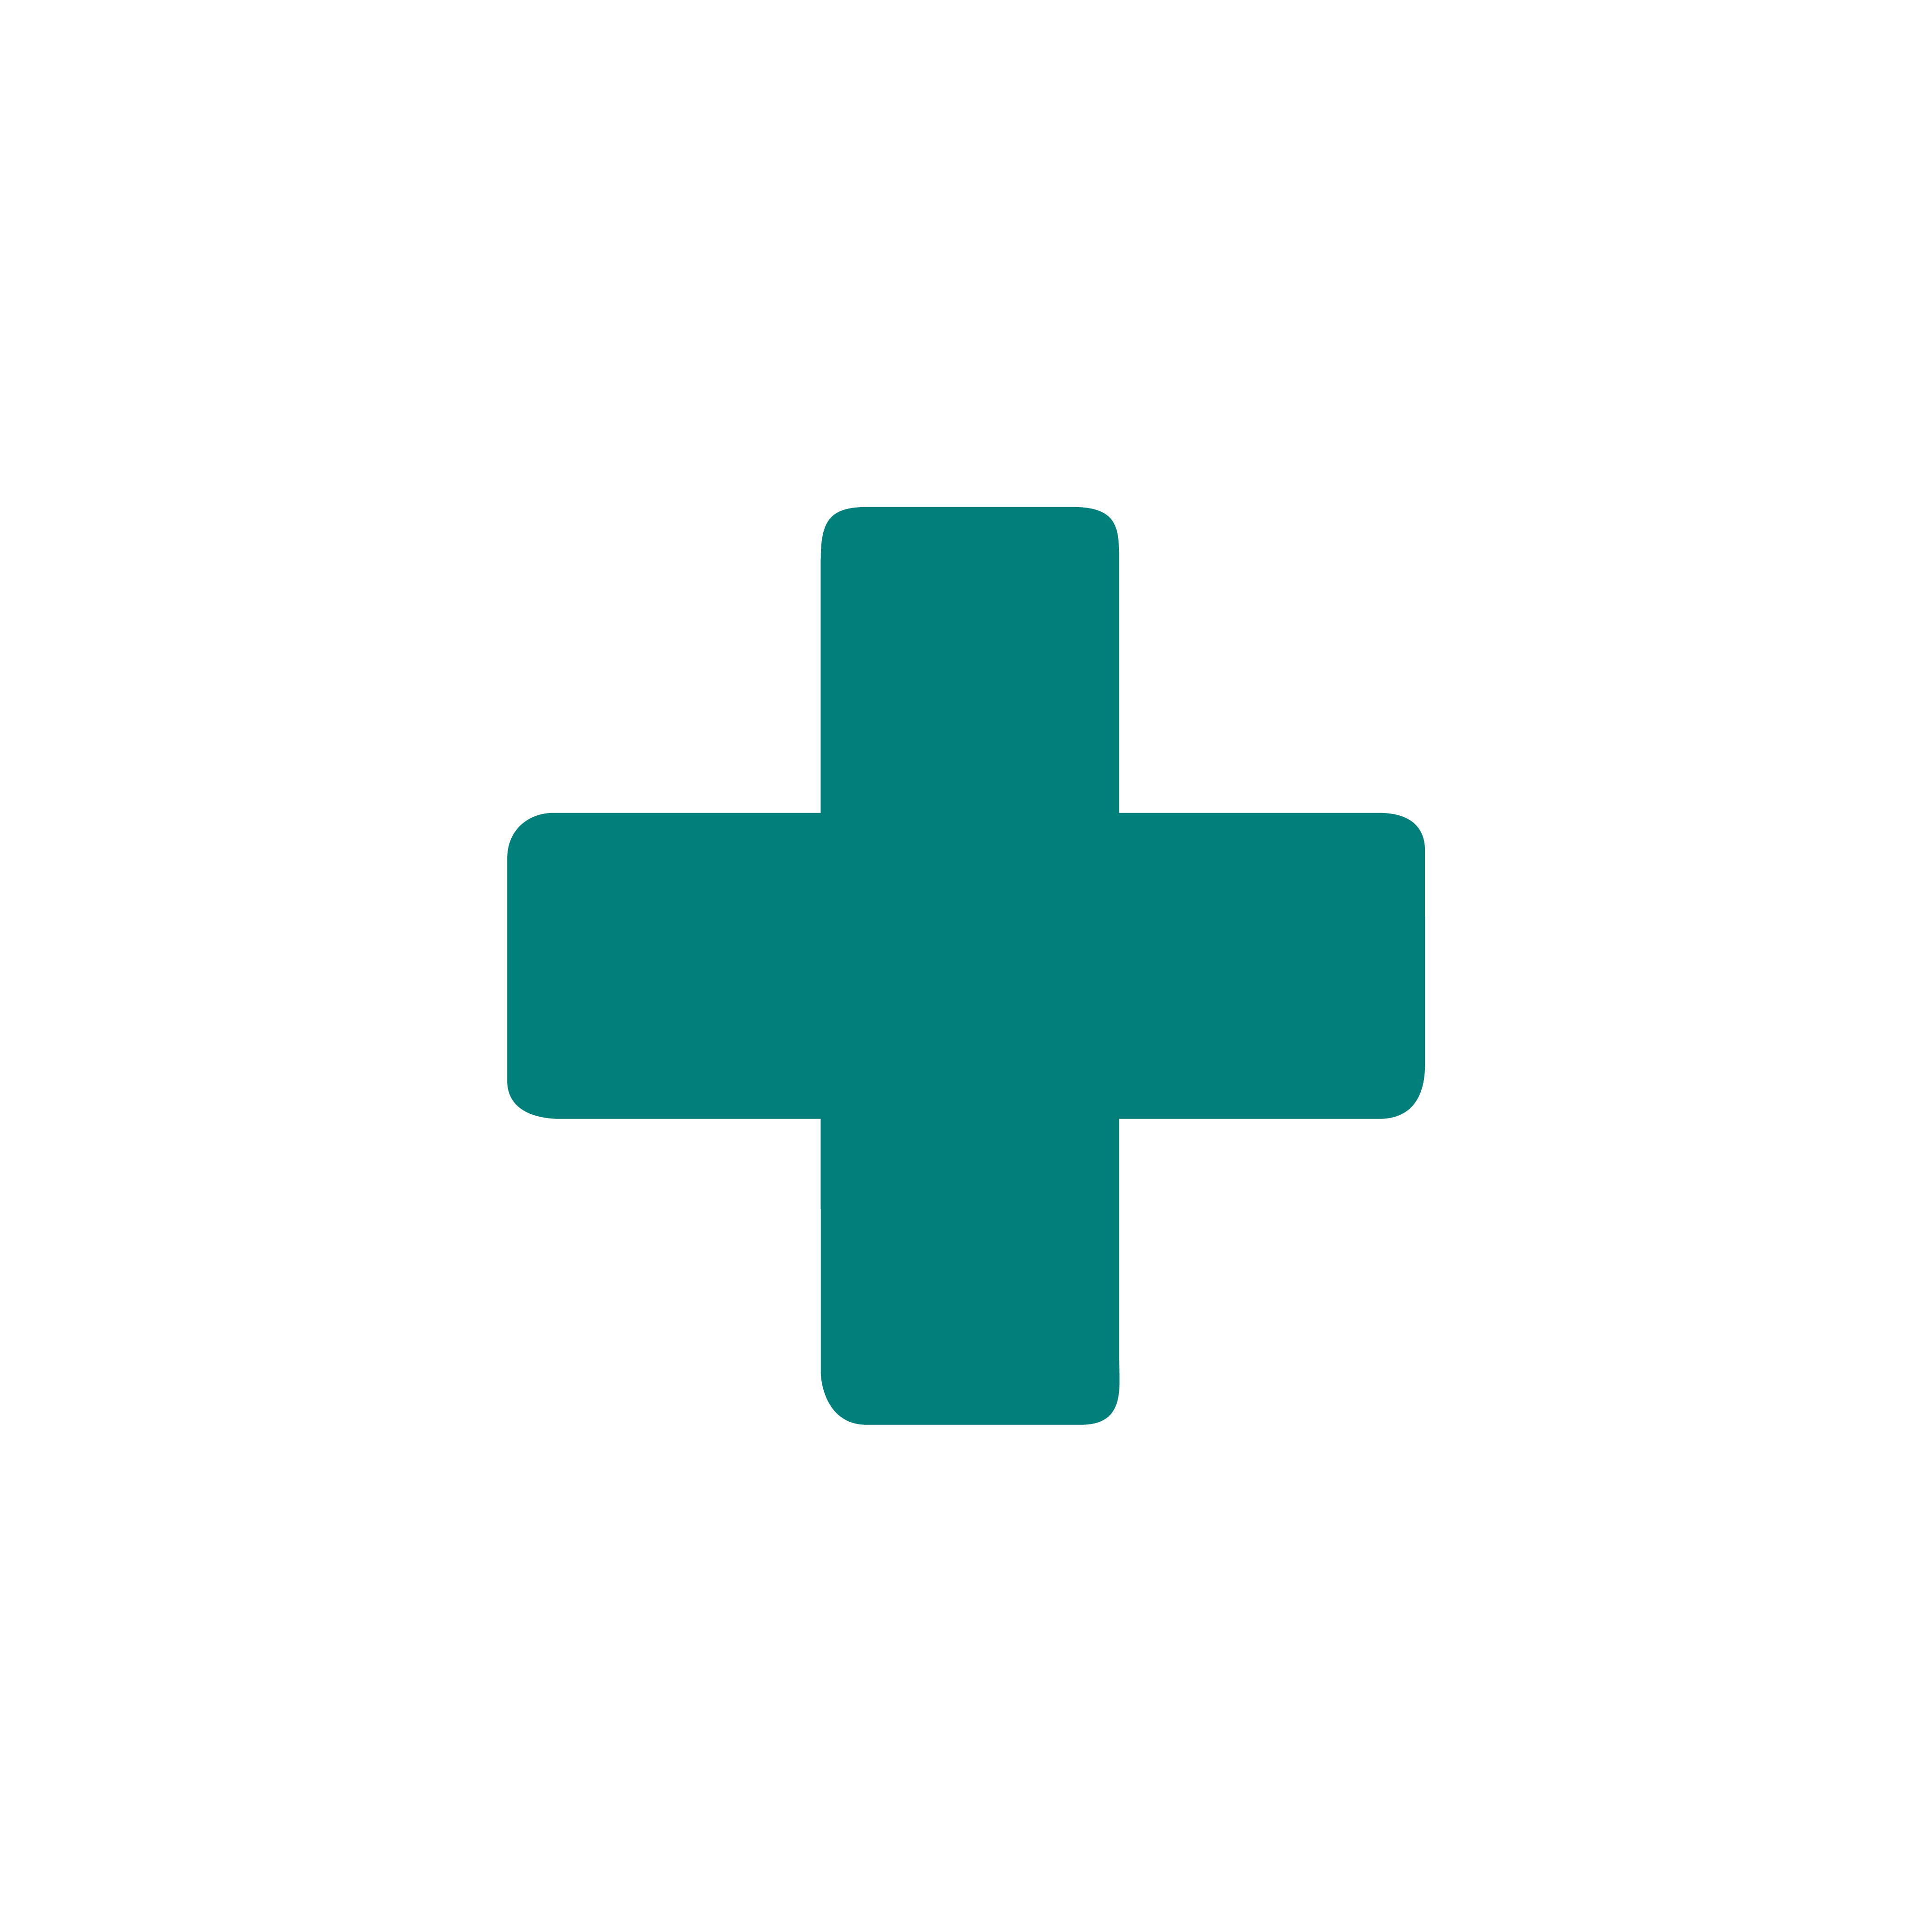 simbolos da farmacia. que significa a cruz verde? cruz como simbolo da farmacia. medd design-2022